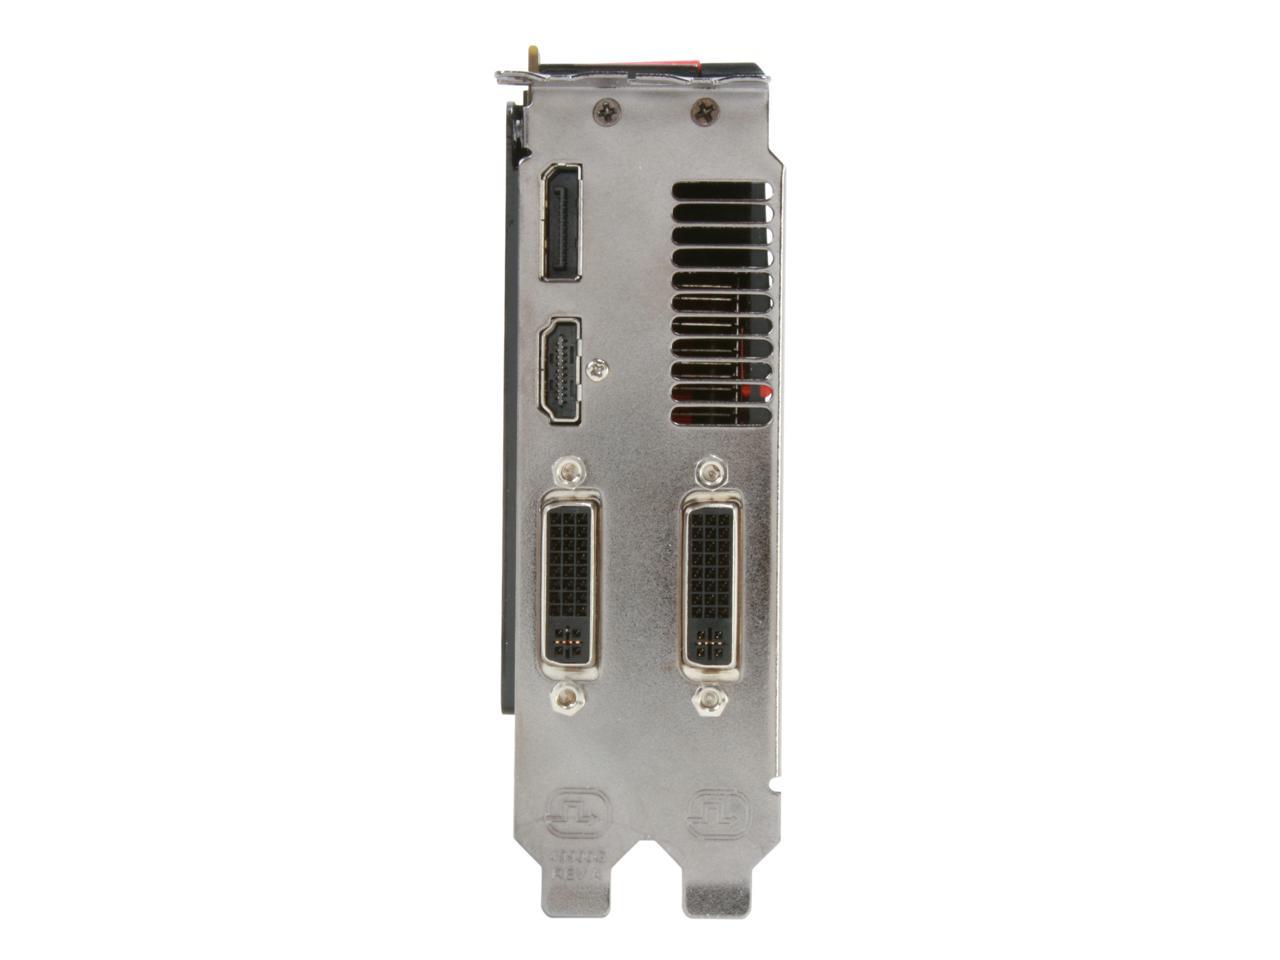 POWERCOLOR AX5870 1GBD5-MDH Radeon HD 5870 (Cypress XT) 1GB 256-bit